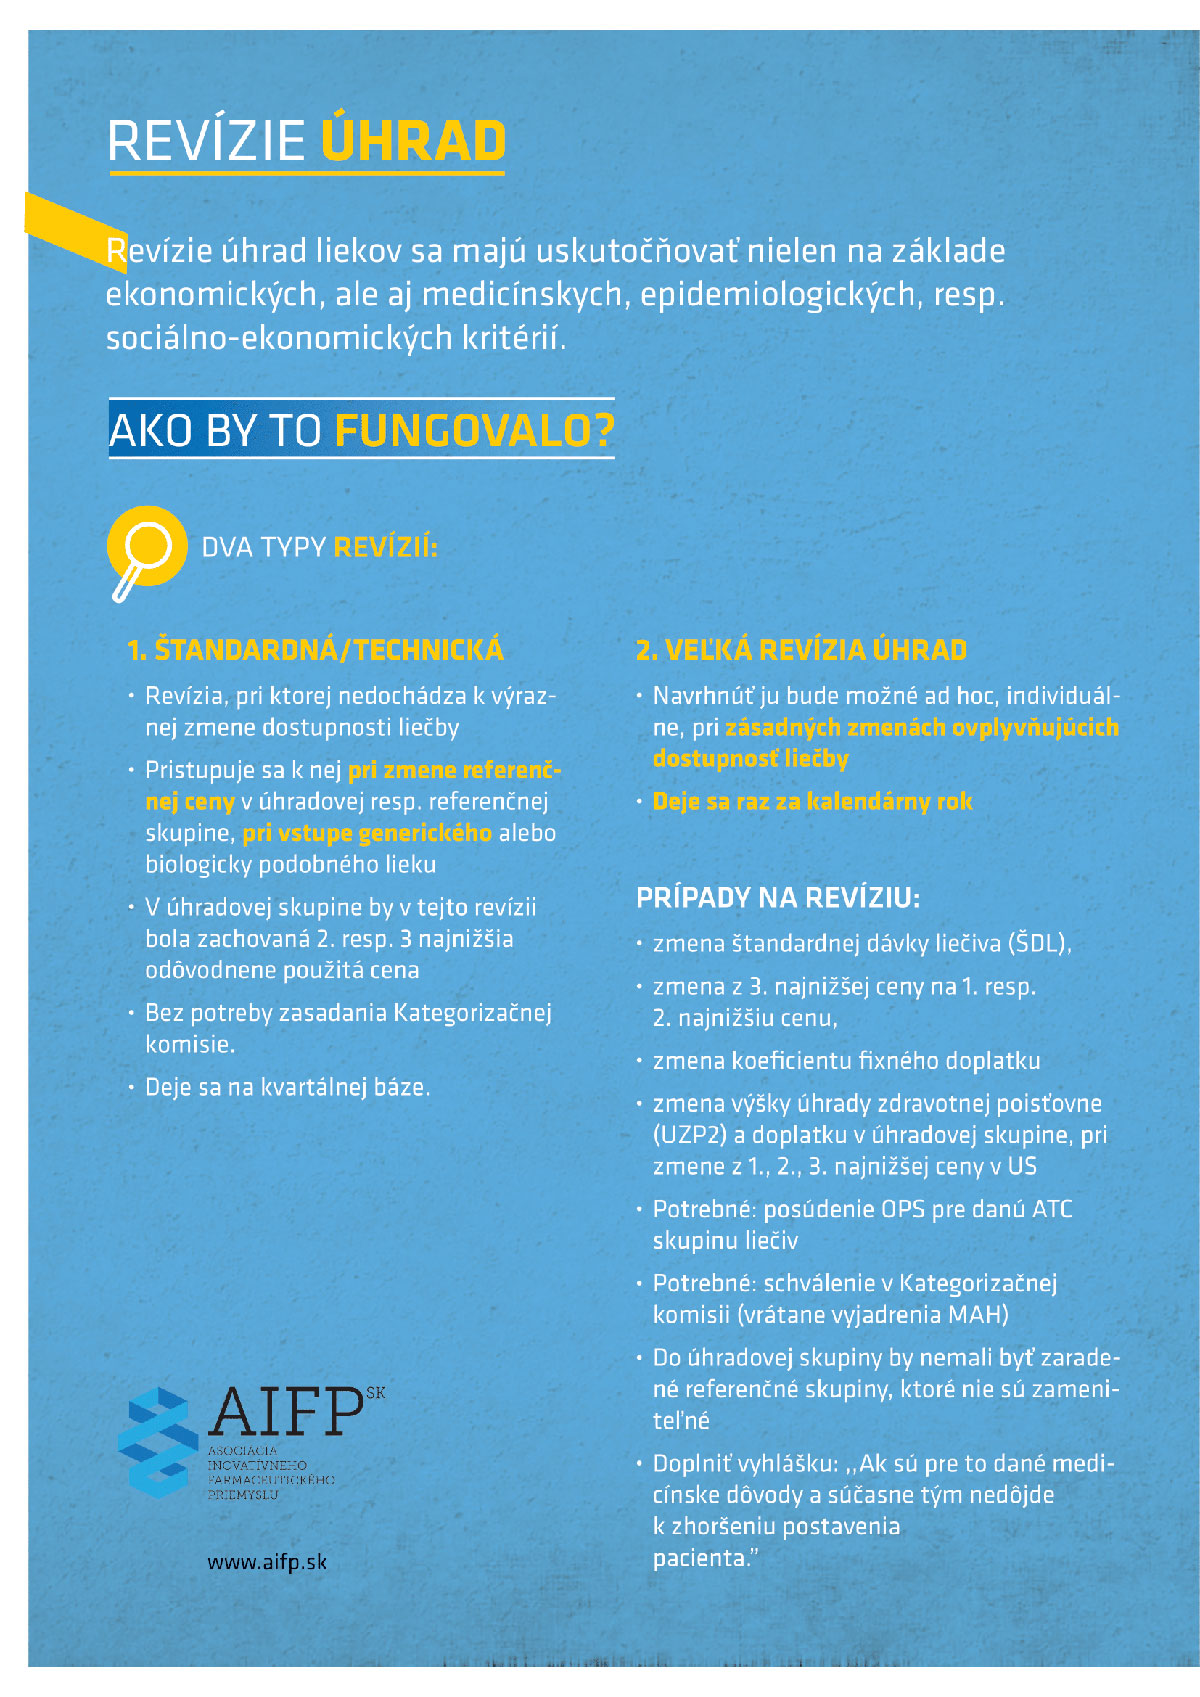 AIFP_Buducnost-liekovej-politiky